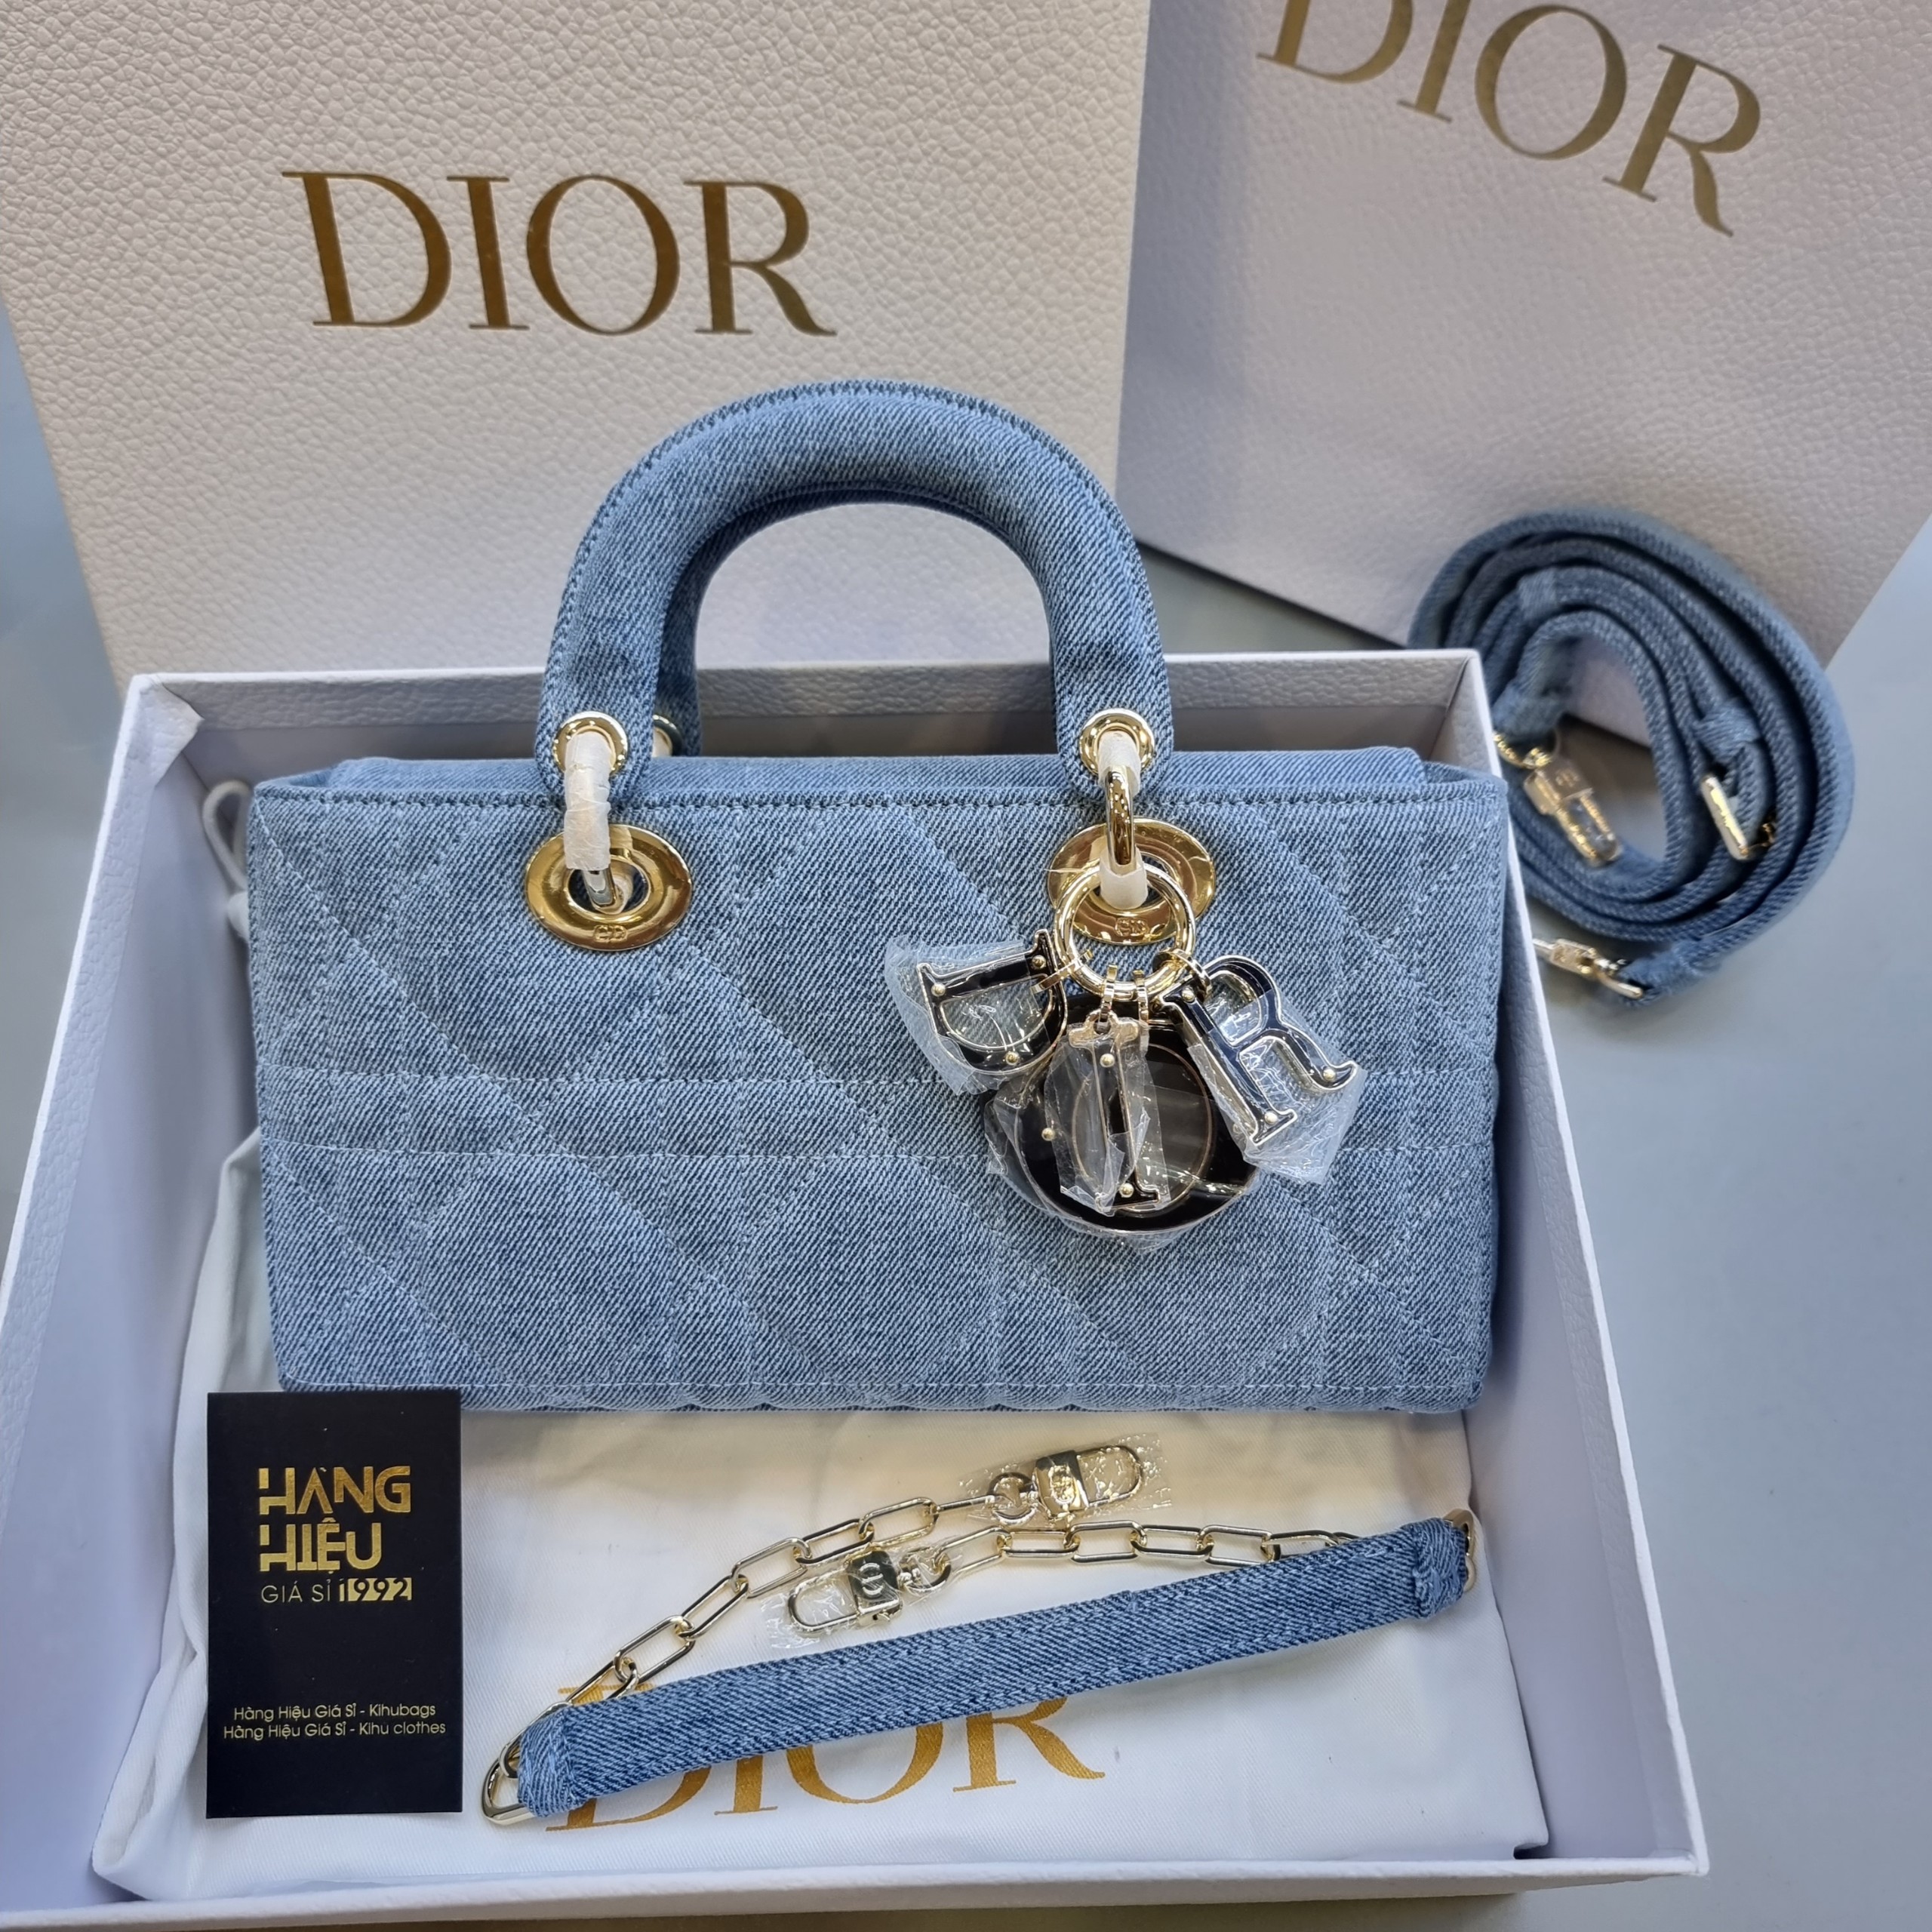 Thiết kế túi xách Lady DJoy kích cỡ micro của Dior dành riêng cho  Smartphone